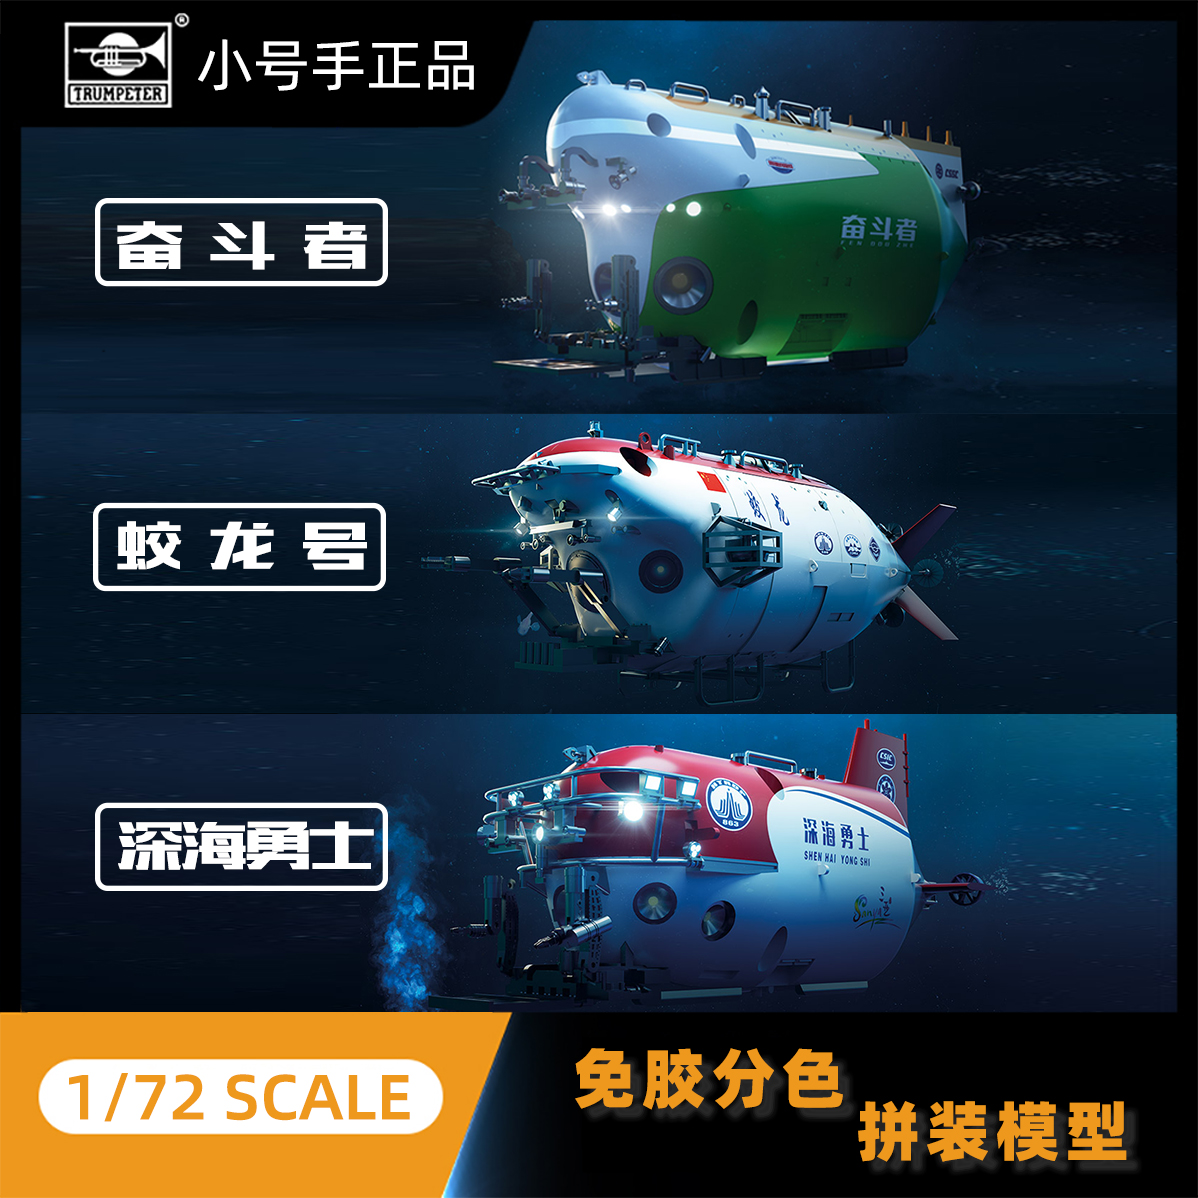 小号手拼装模型1/72 中国蛟龙号 深海勇士 奋斗者 载人潜水艇益智